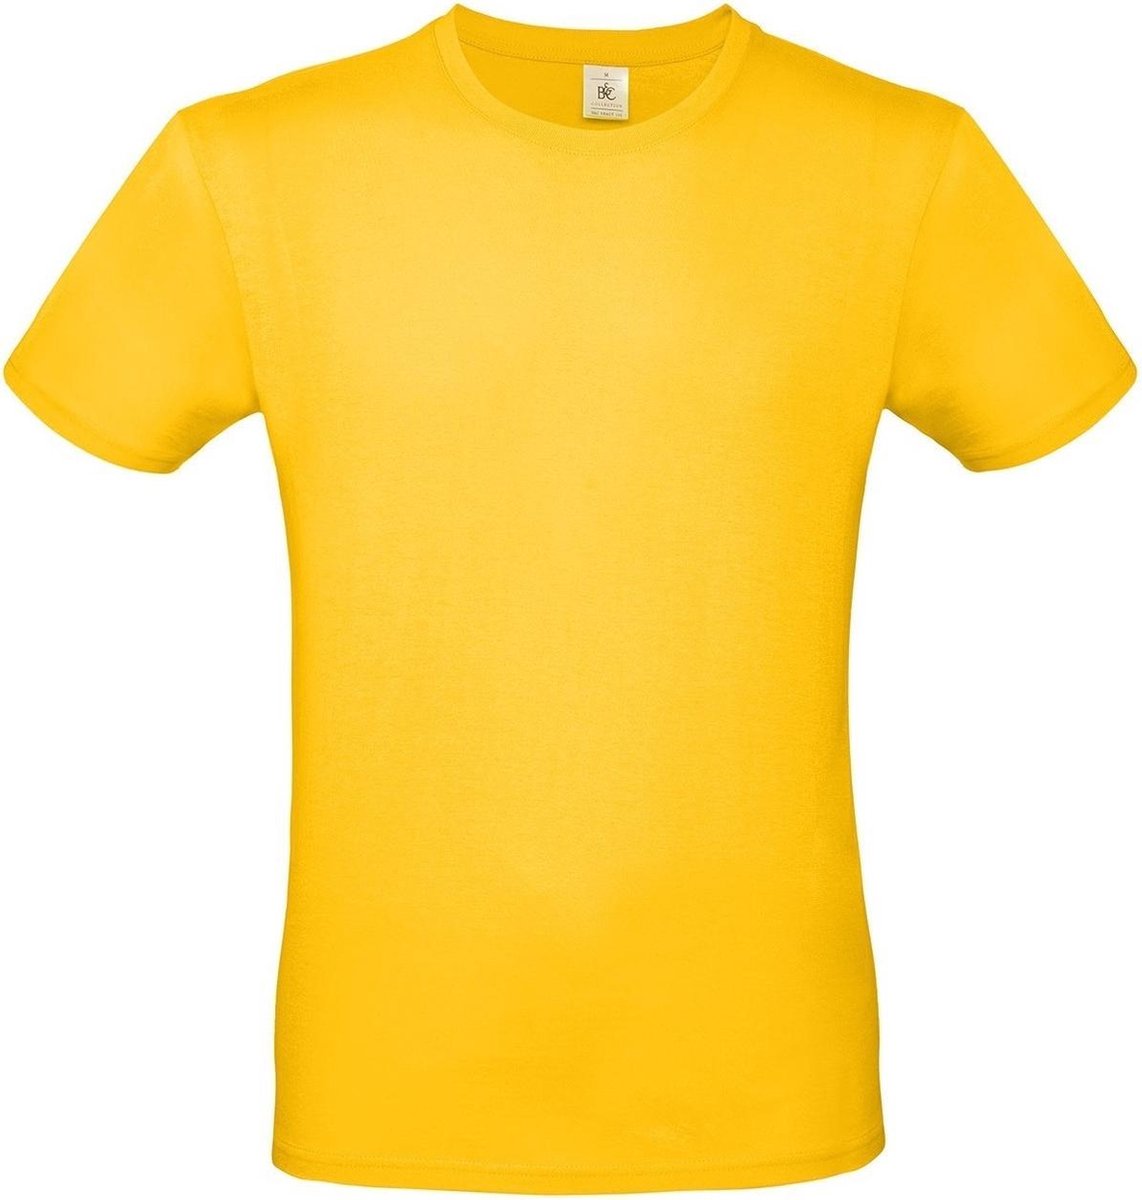 Set van 3x stuks geel basic t-shirt met ronde hals voor heren - katoen - 145 grams - gele shirts / kleding, maat: L (52)